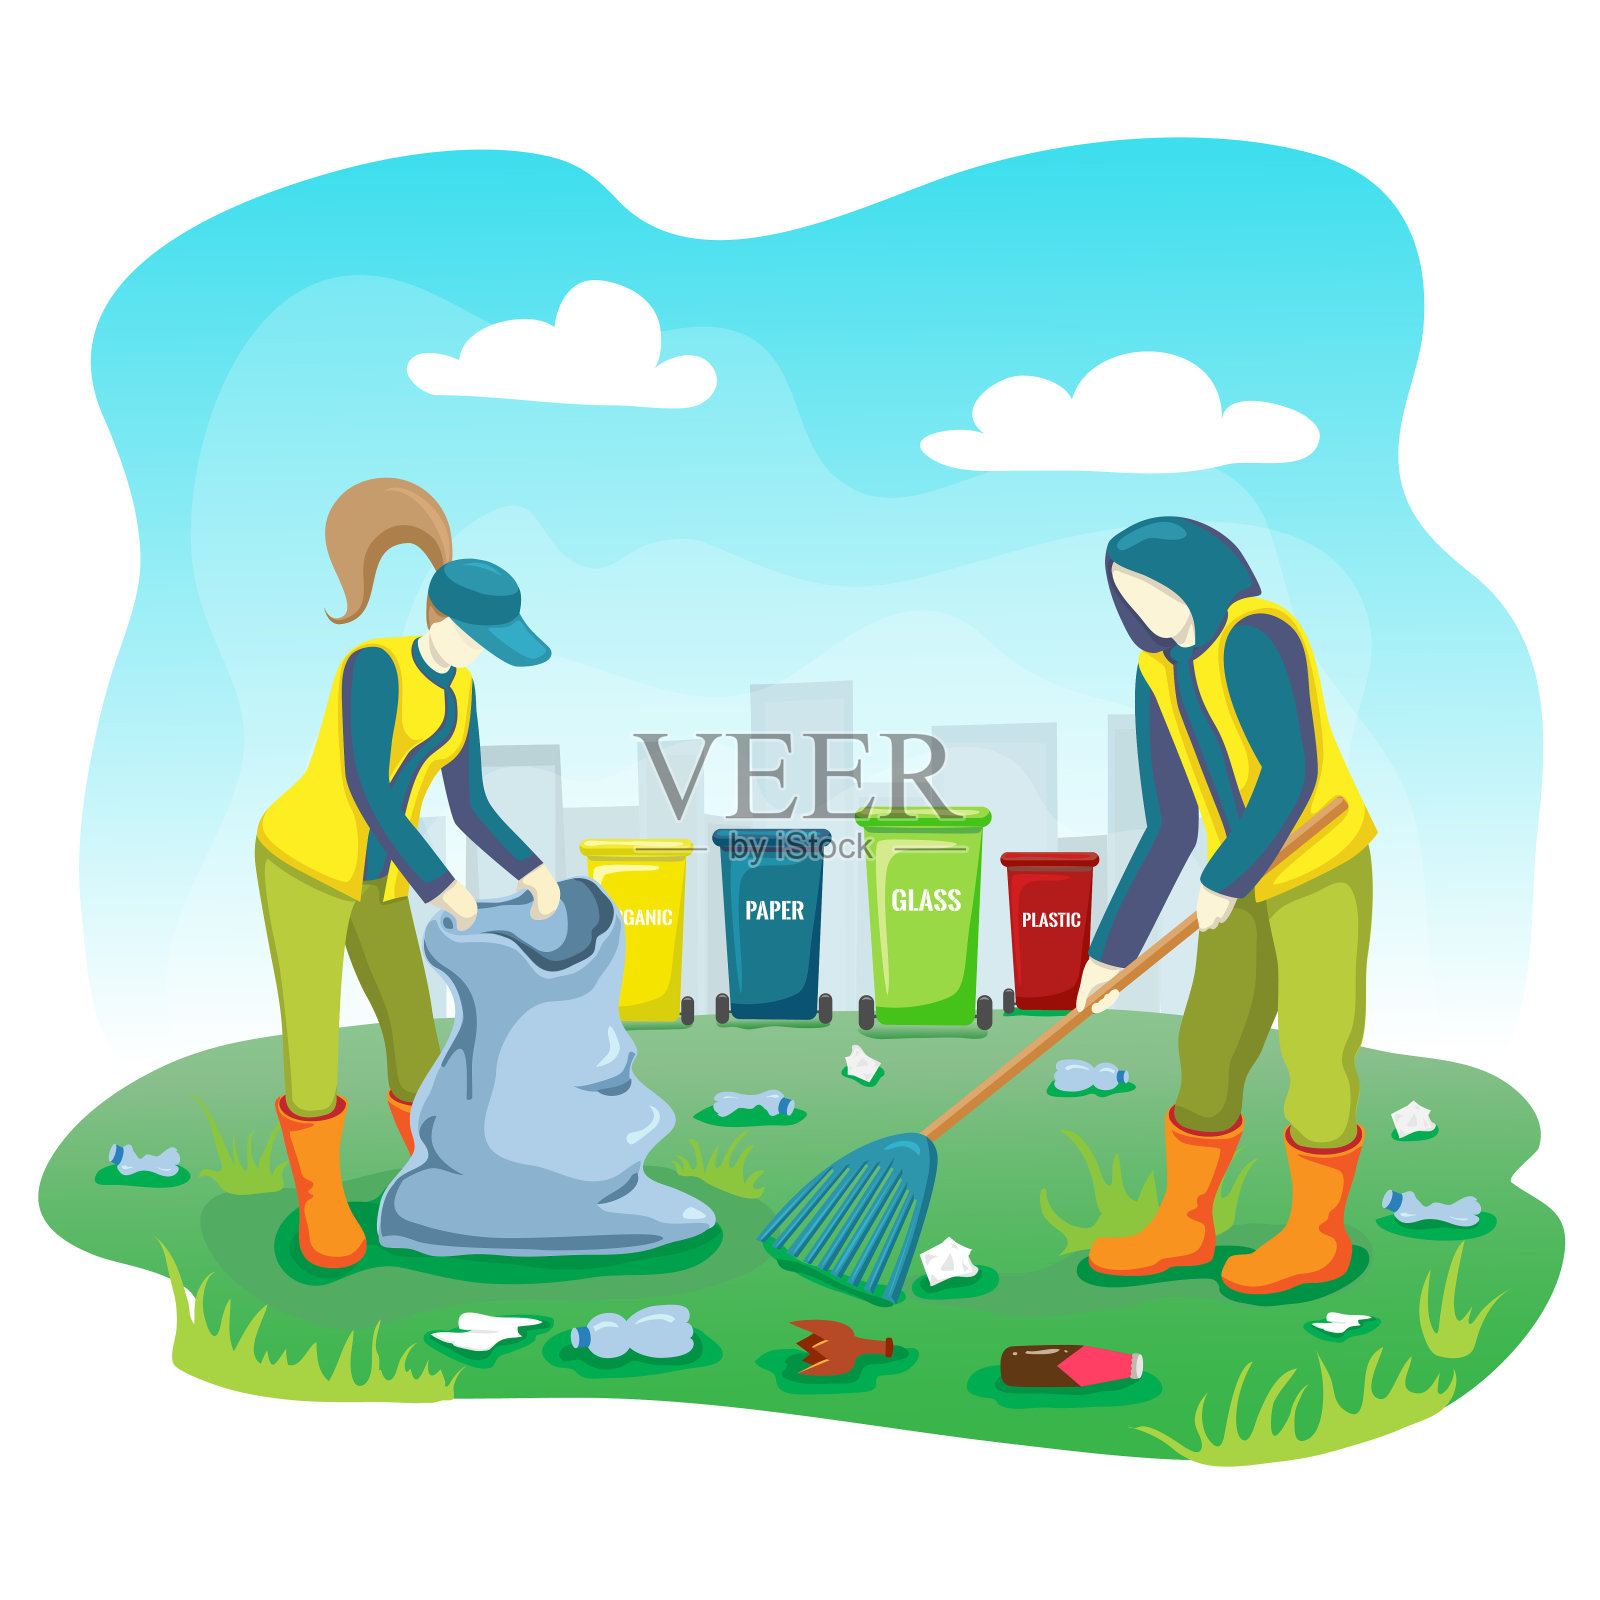 义工用垃圾袋和垃圾桶在城市公园的草坪上捡垃圾、塑料瓶和清洁垃圾。志愿者团队在户外收集和分类垃圾，爱护地球。拯救世界的概念。插画图片素材